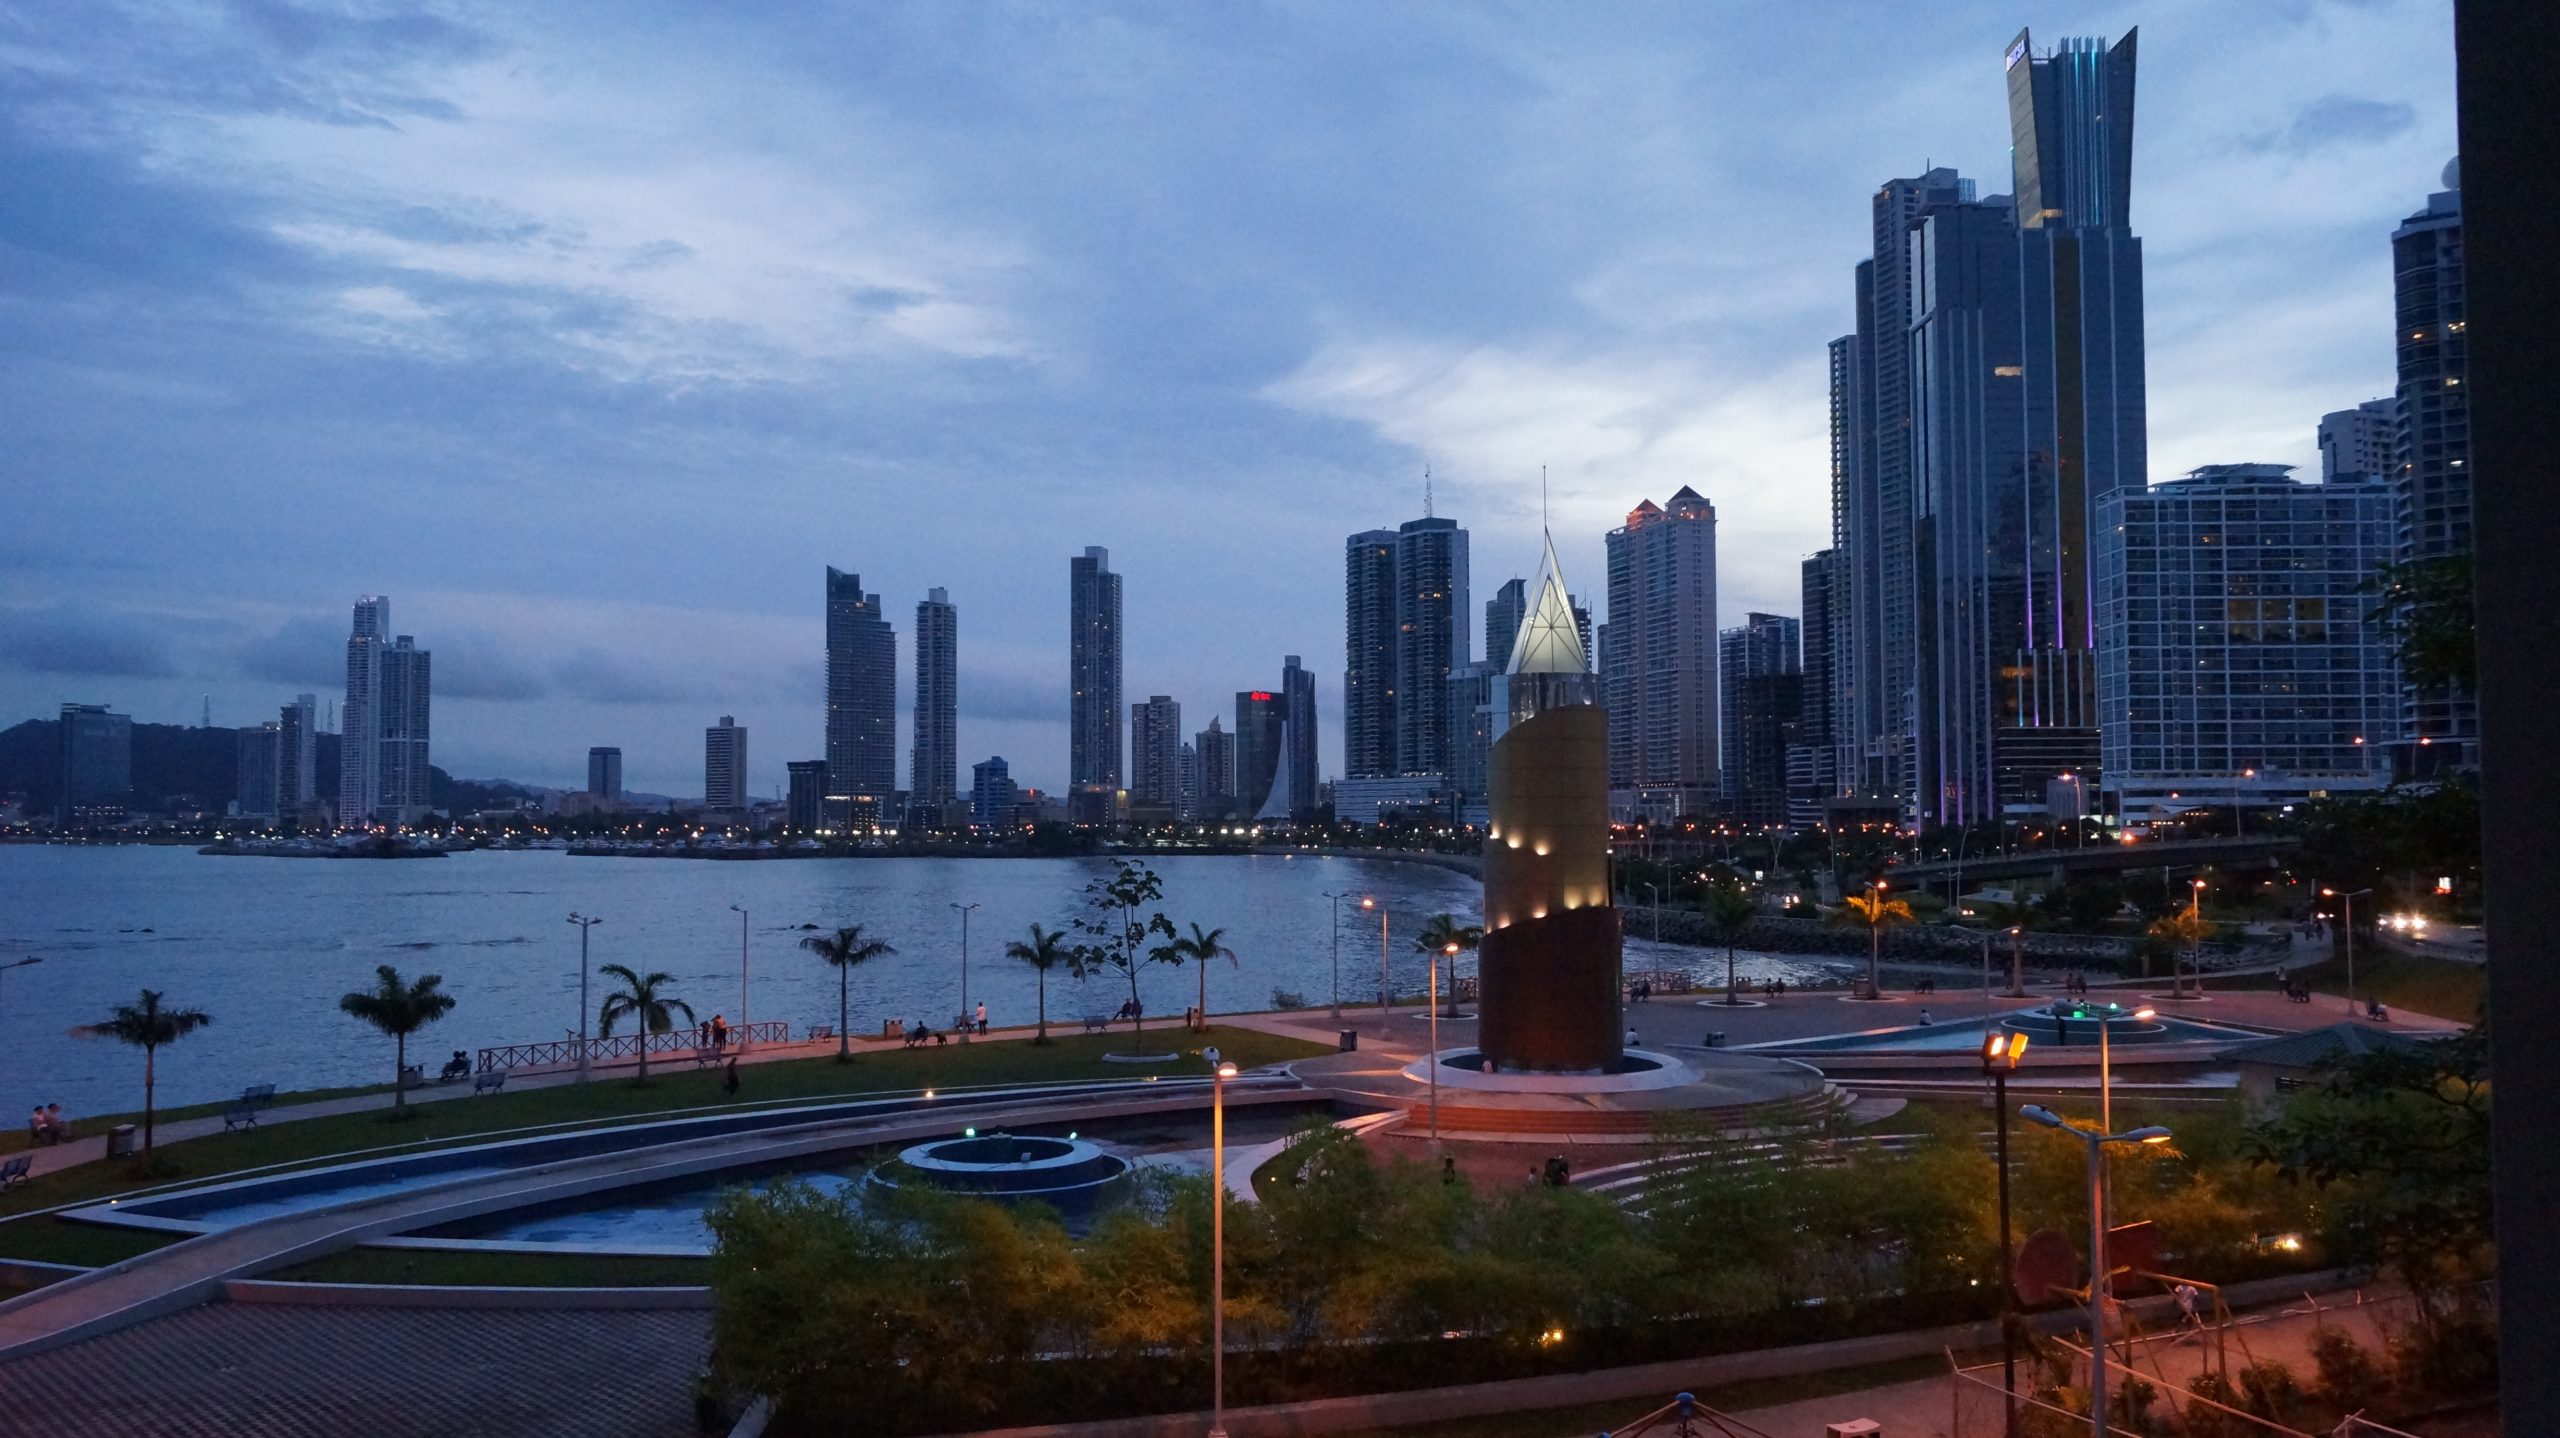 Ciudad de Panama, avanza la licitación del colector del Matasnillo, por $60 millones